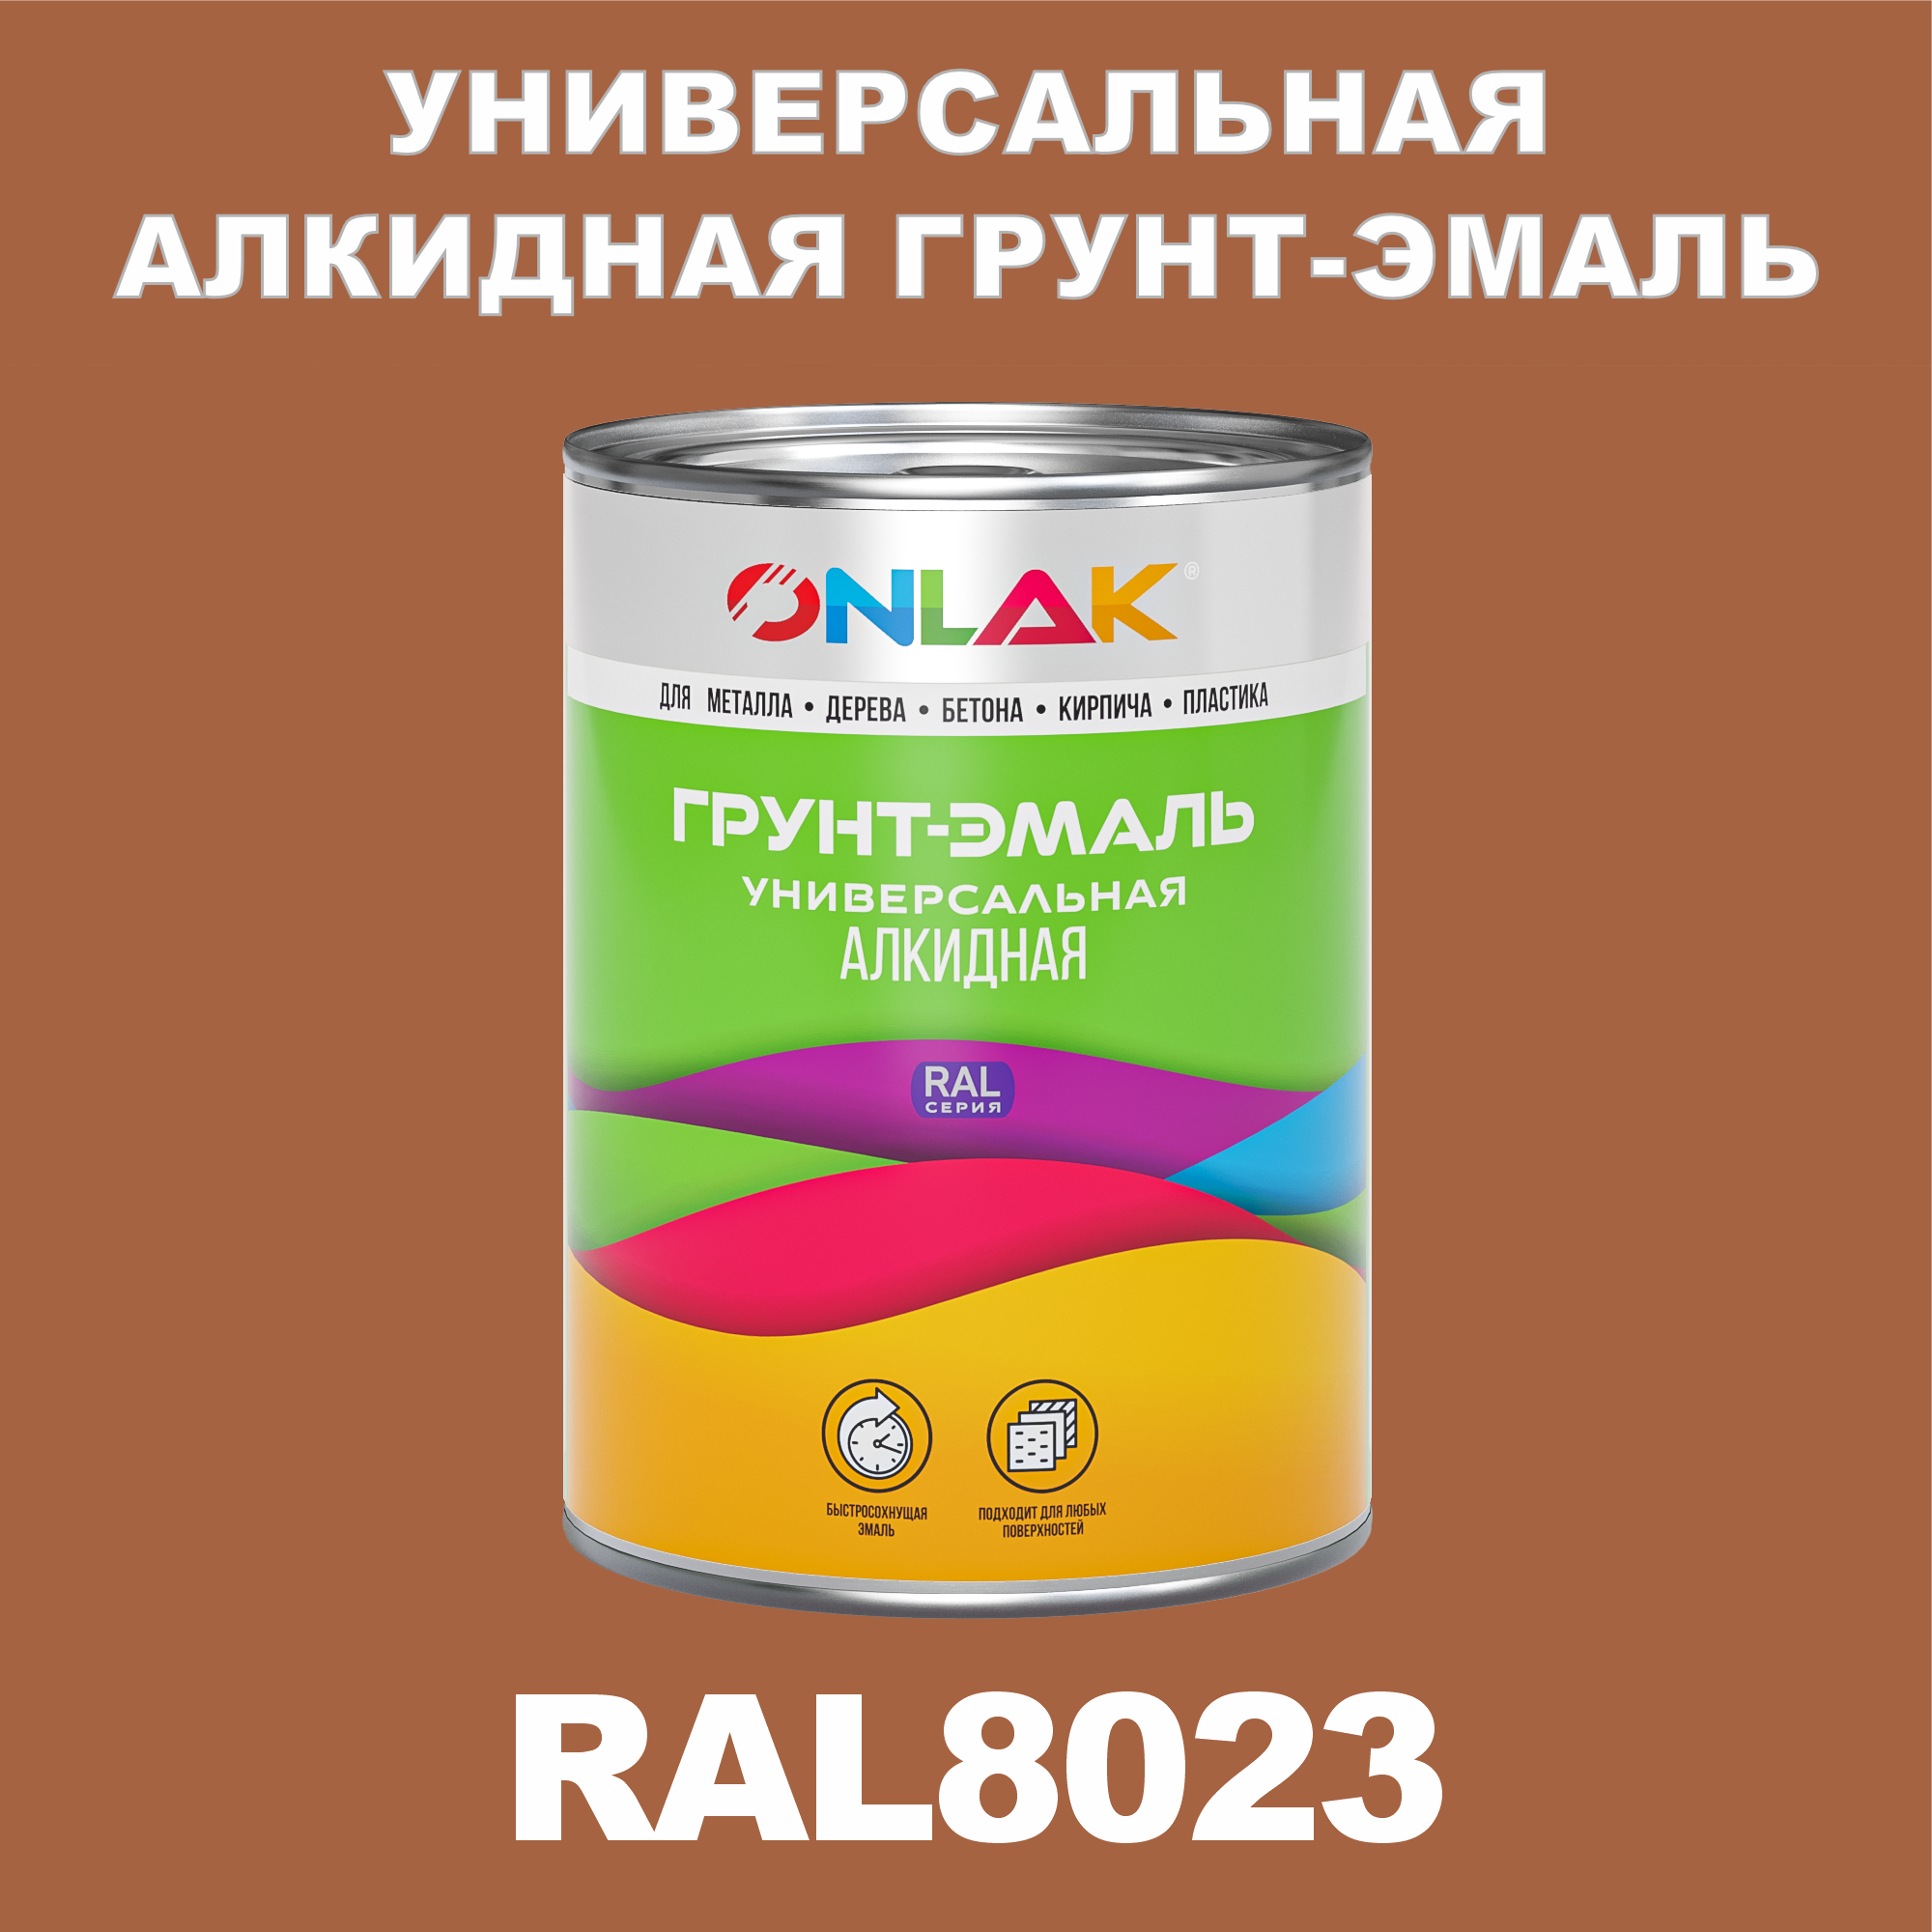 Грунт-эмаль ONLAK 1К RAL8023 антикоррозионная алкидная по металлу по ржавчине 1 кг грунт эмаль аэрозольная престиж 3в1 алкидная коричневая ral 8017 425 мл 0 425 кг